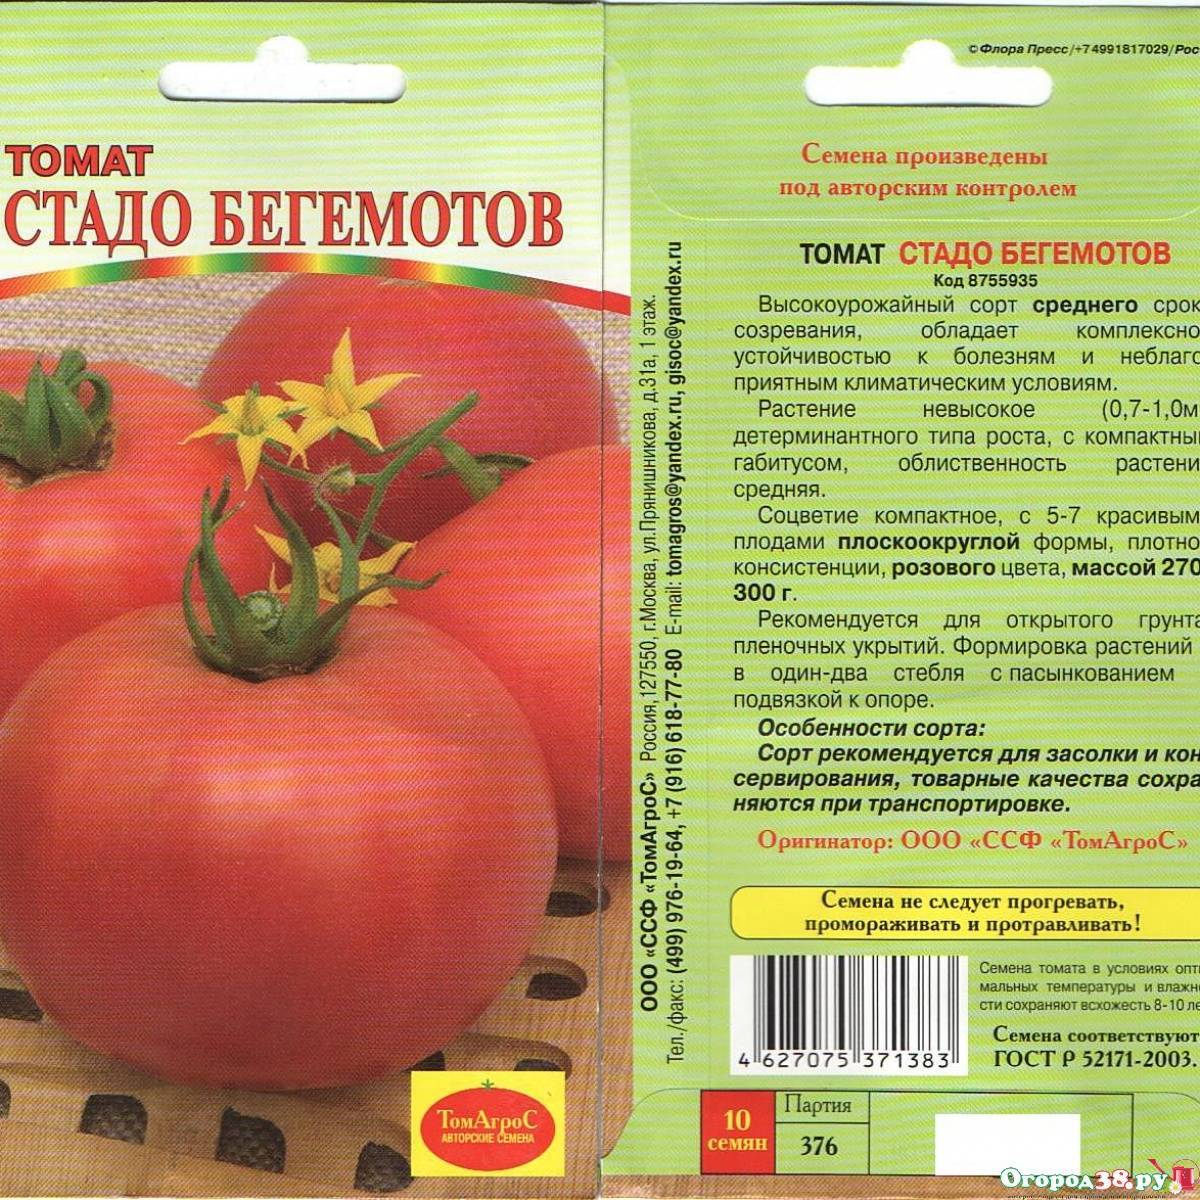 Комнатные помидоры — лучшие сорта, правила посадки и особенности ухода